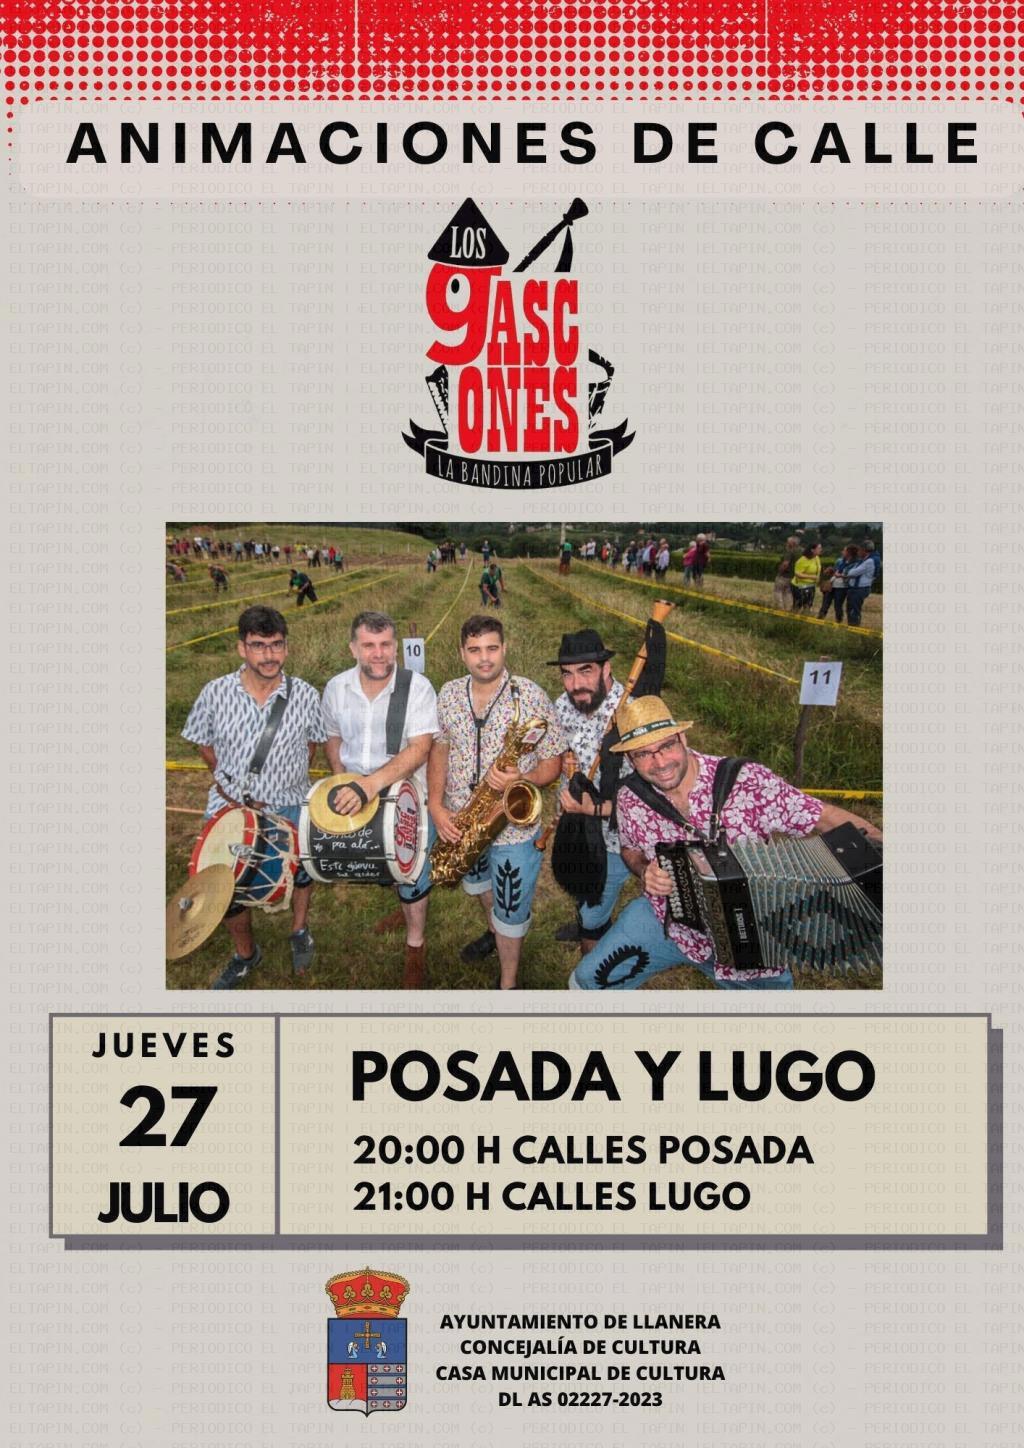 El Tapin - Actuación de Los Gascones en Posada y Lugo el día 27 de julio